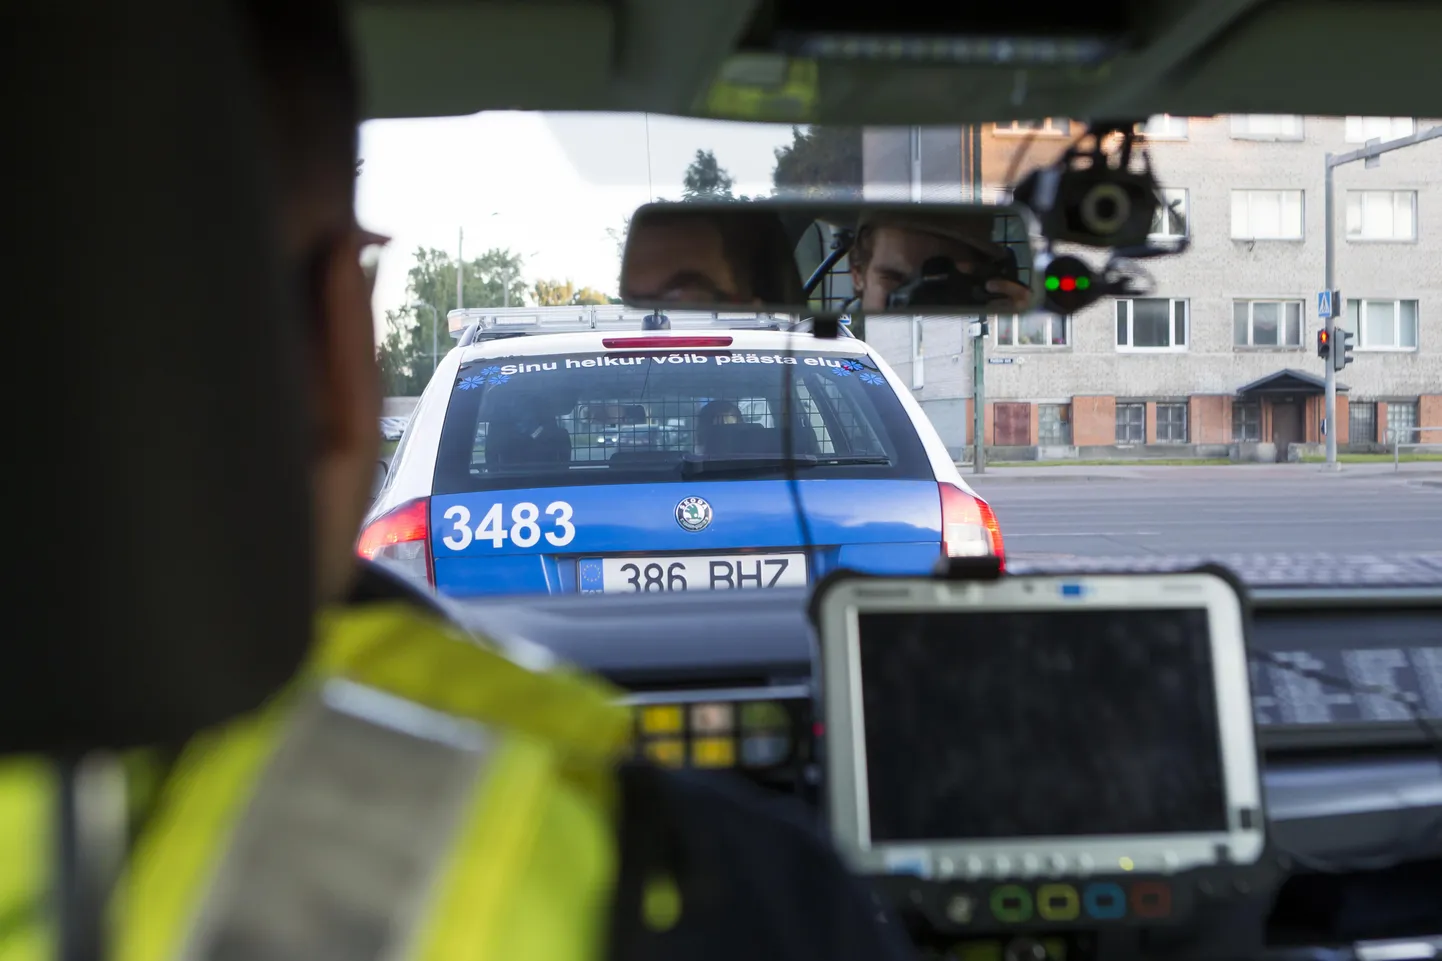 Alarmsõidukijuhtimise koolituse läbinud abipolitseinik võib ka politseiauto rooli minna.